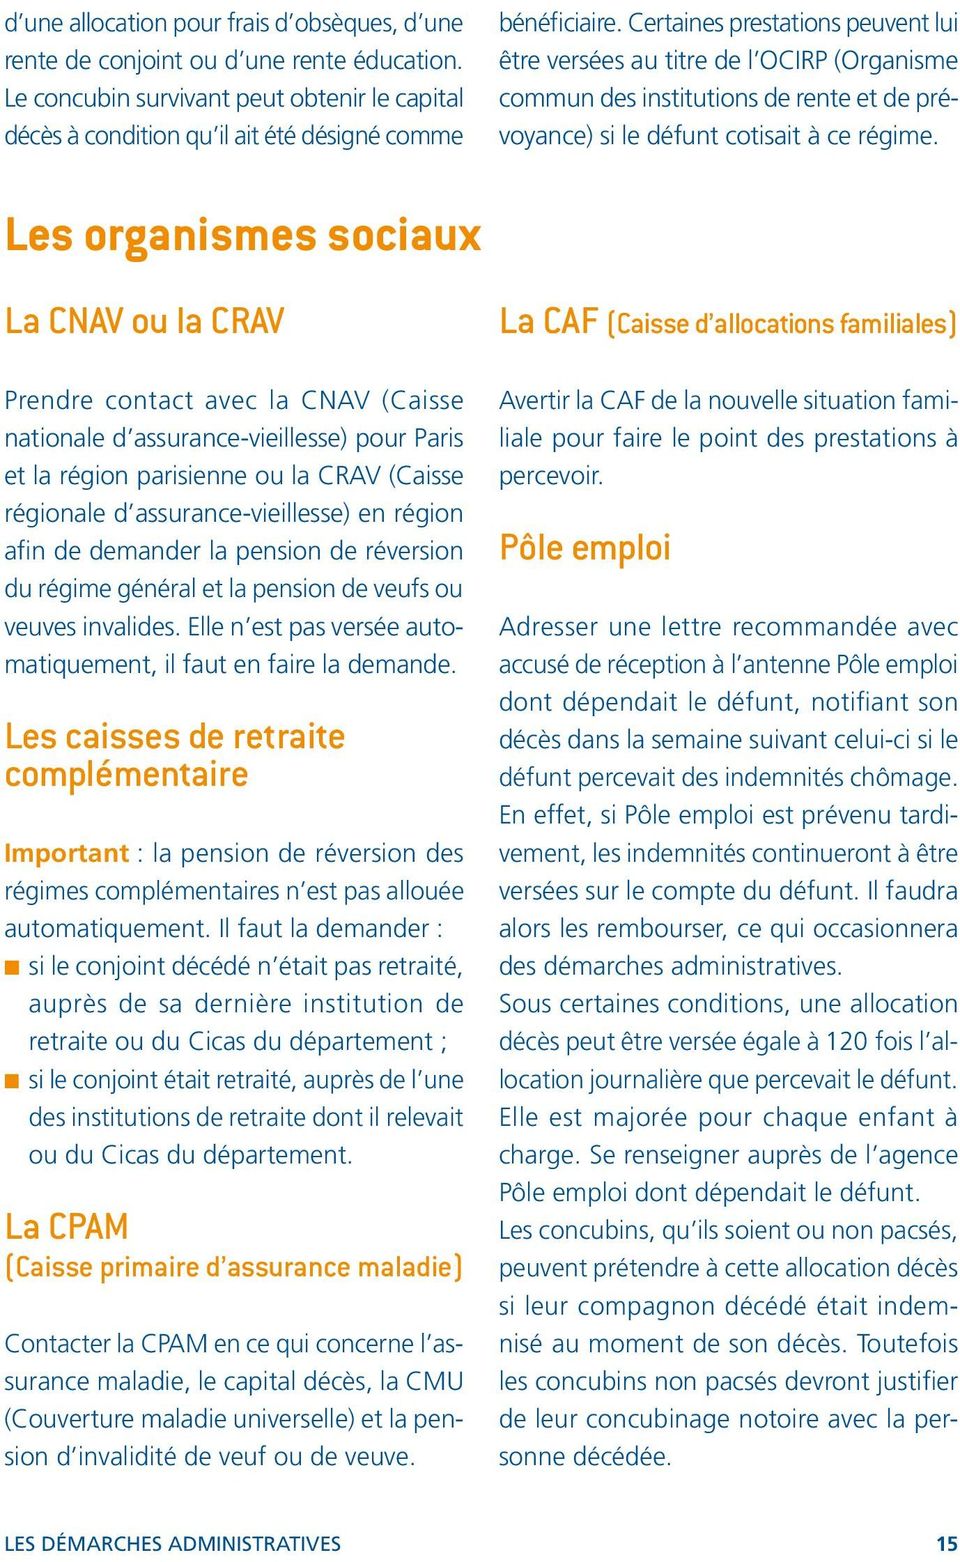 Les organismes sociaux La CNAV ou la CRAV Prendre contact avec la CNAV (Caisse nationale d assurance-vieillesse) pour Paris et la région parisienne ou la CRAV (Caisse régionale d